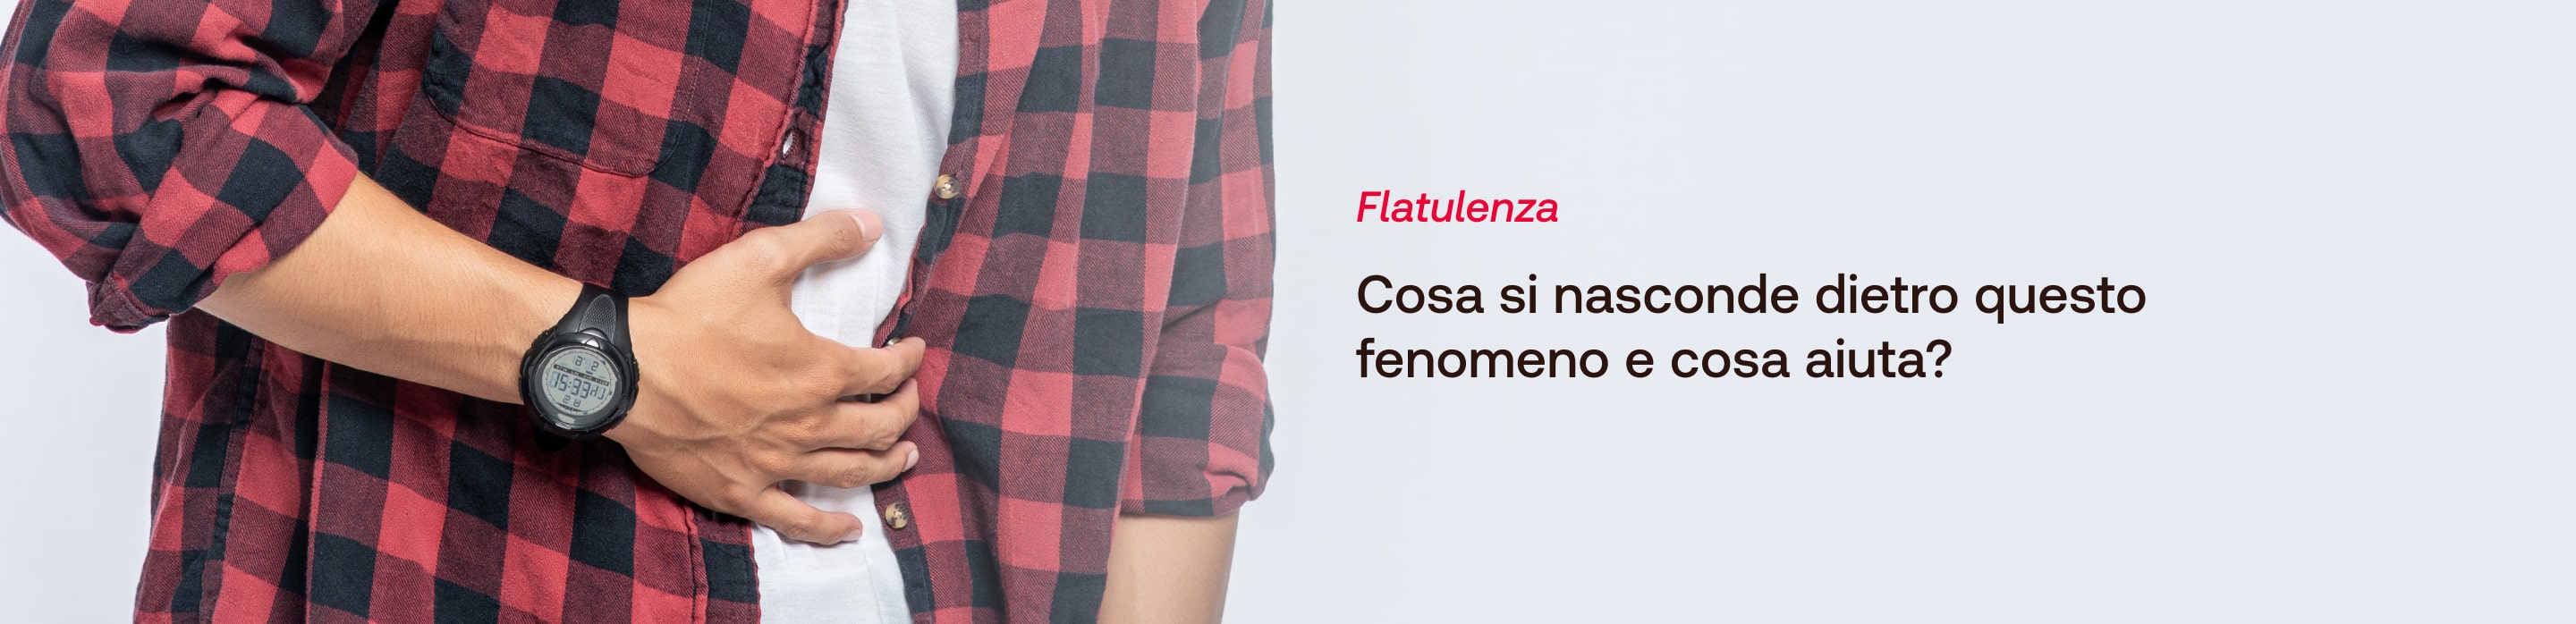 Flatulenza - GUIDA